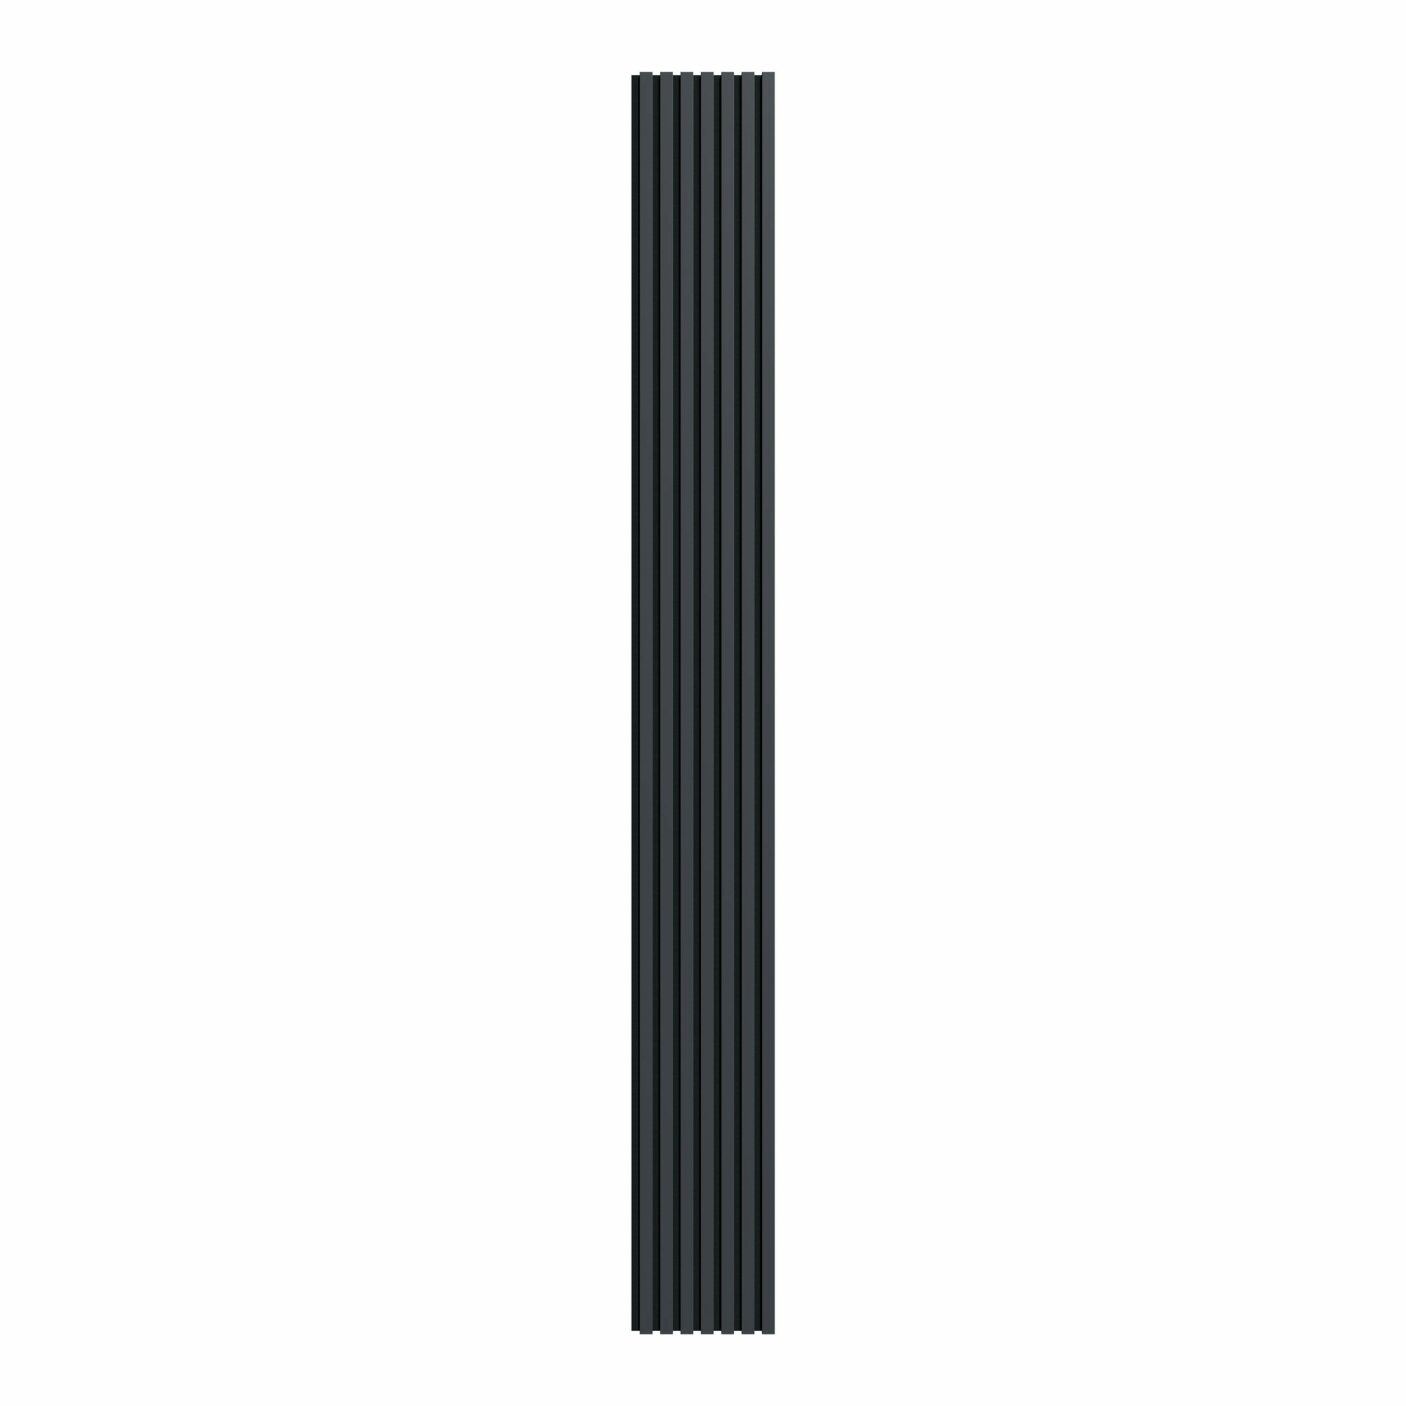 Akustinė lamelių sienelė, 265x30cm, black